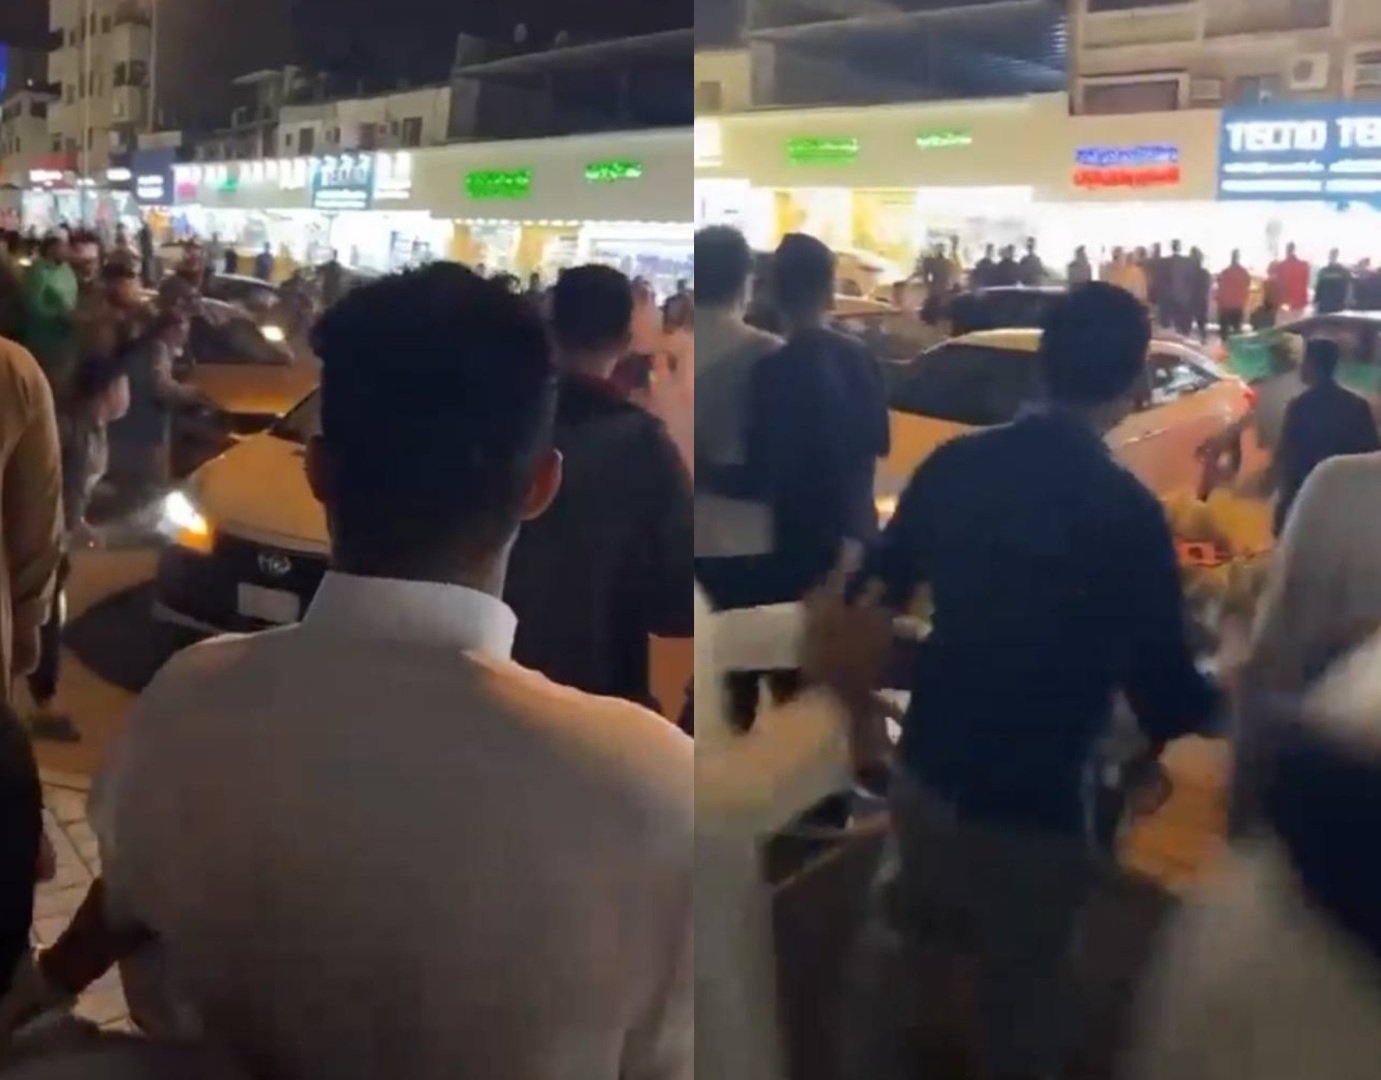 سعوديون يتجمهرون حول سيارة في سوق شعبي.. والسلطات توضح (فيديو)